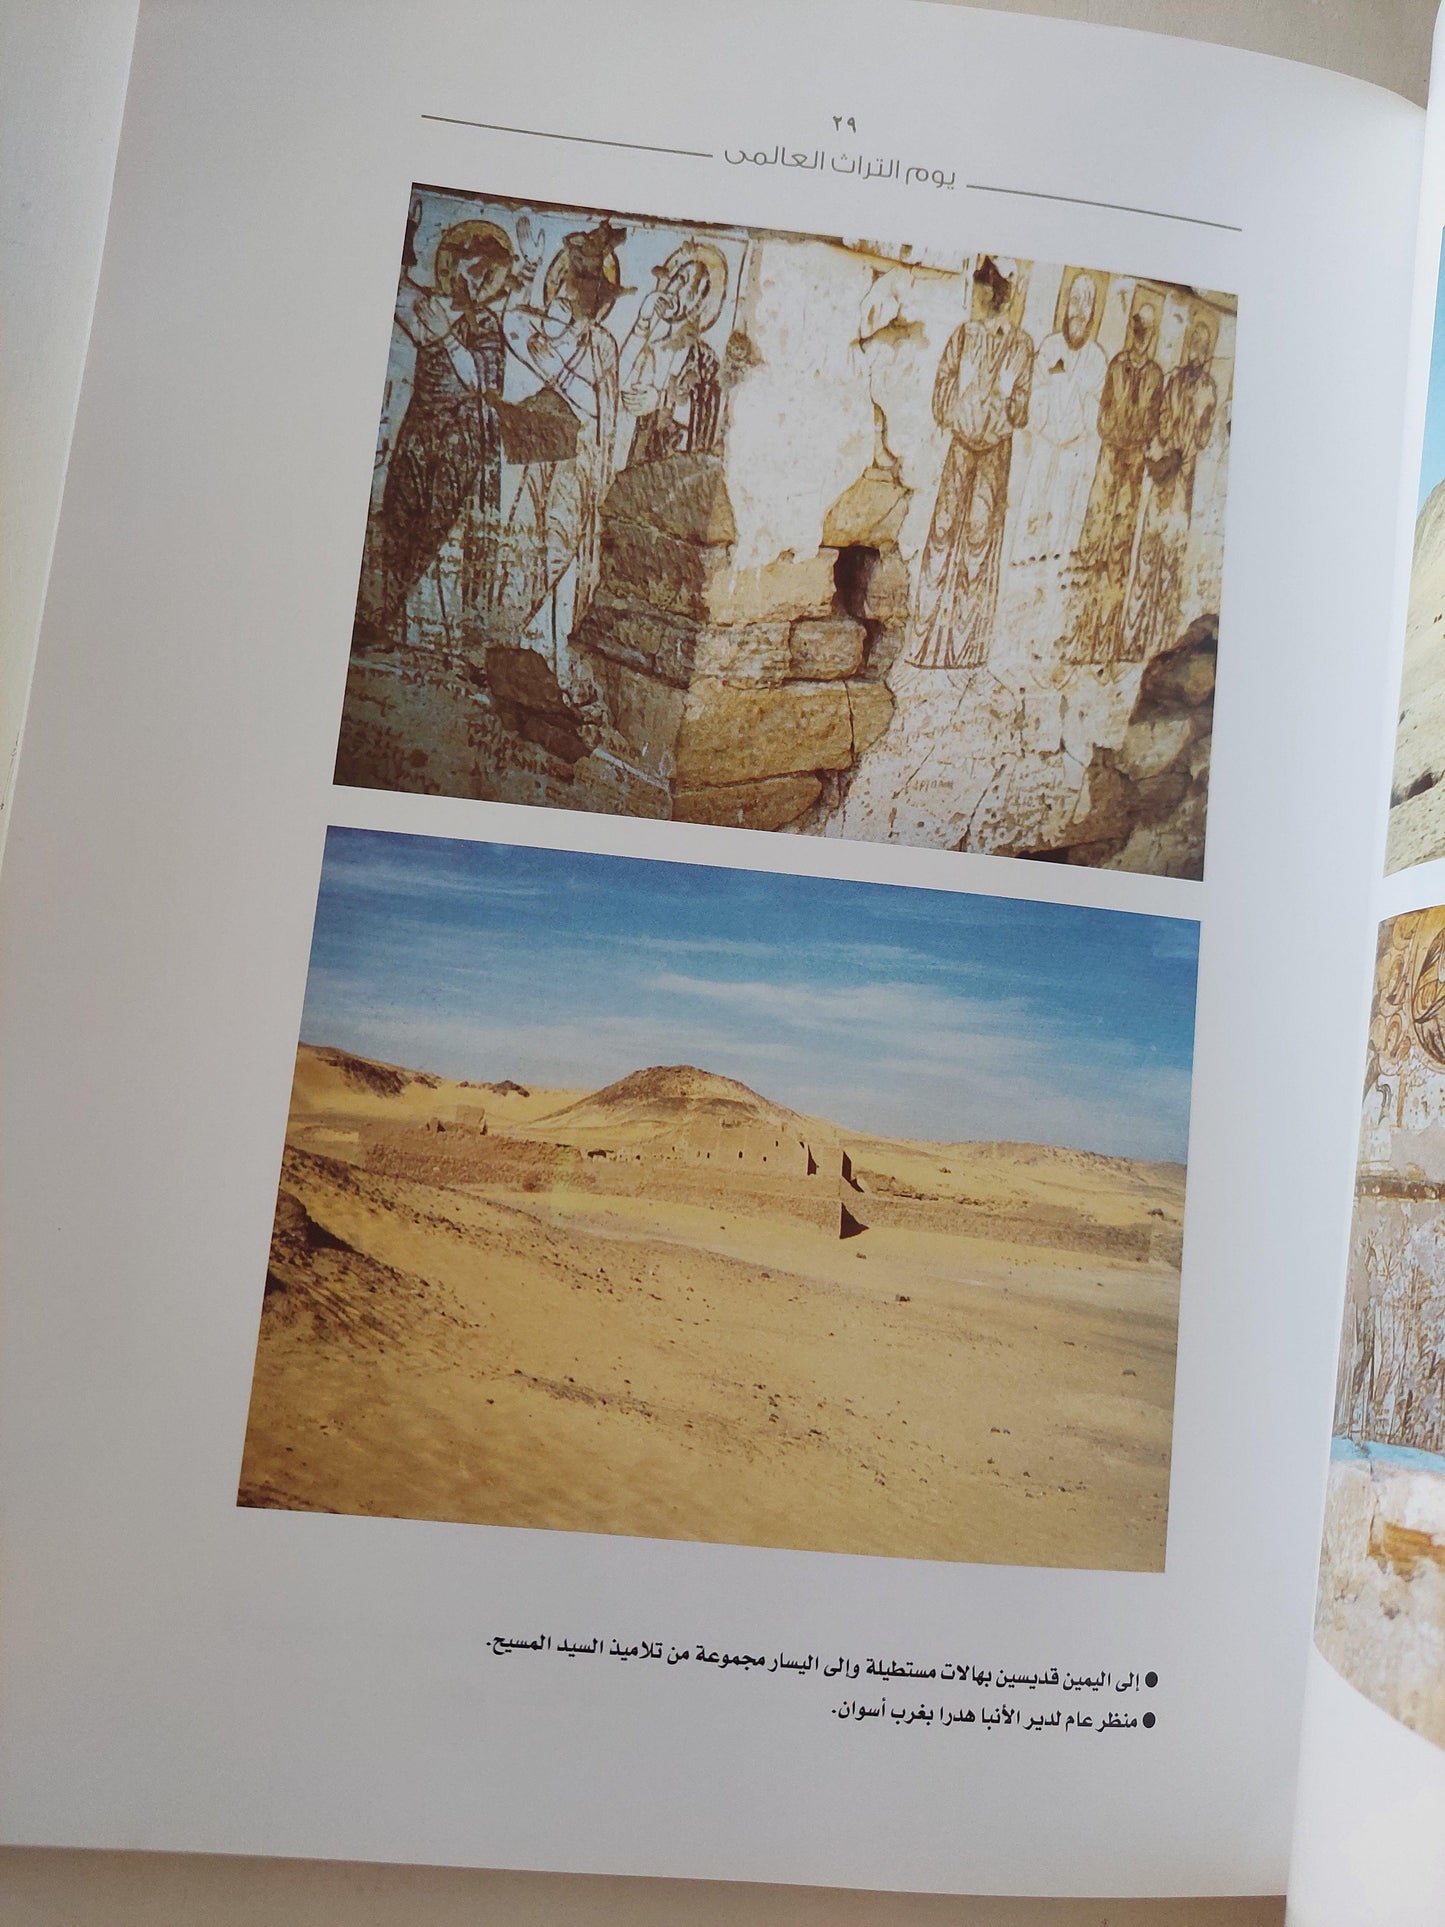 النوبة عبر العصور ( قطع كبير - ألبوم صور ) - متجر كتب مصر